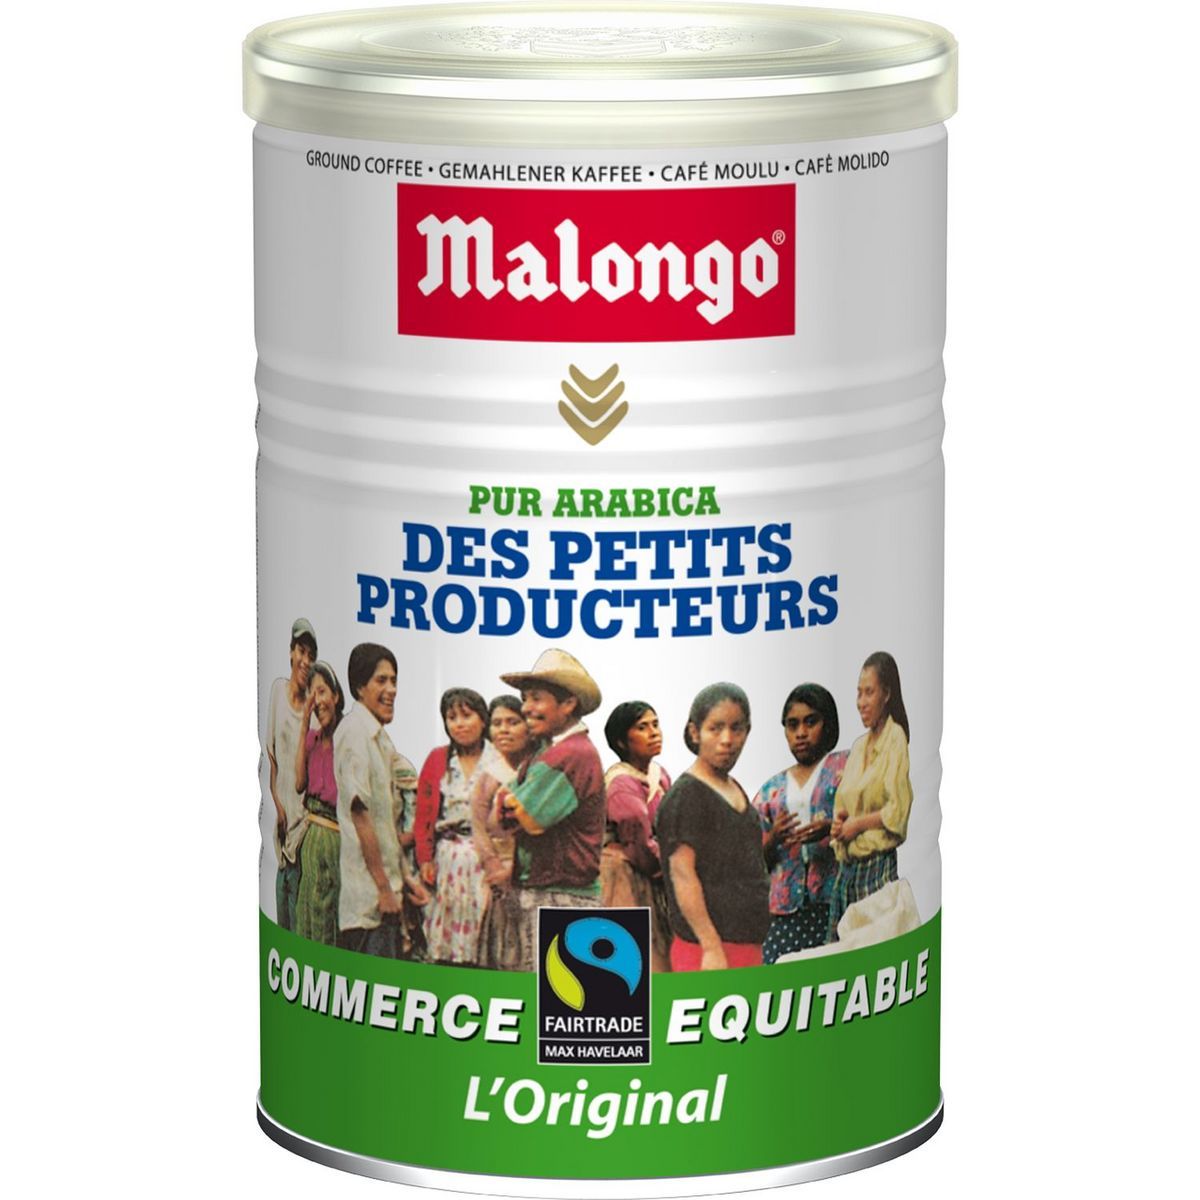 Sur les produits petits producteurs Malongo